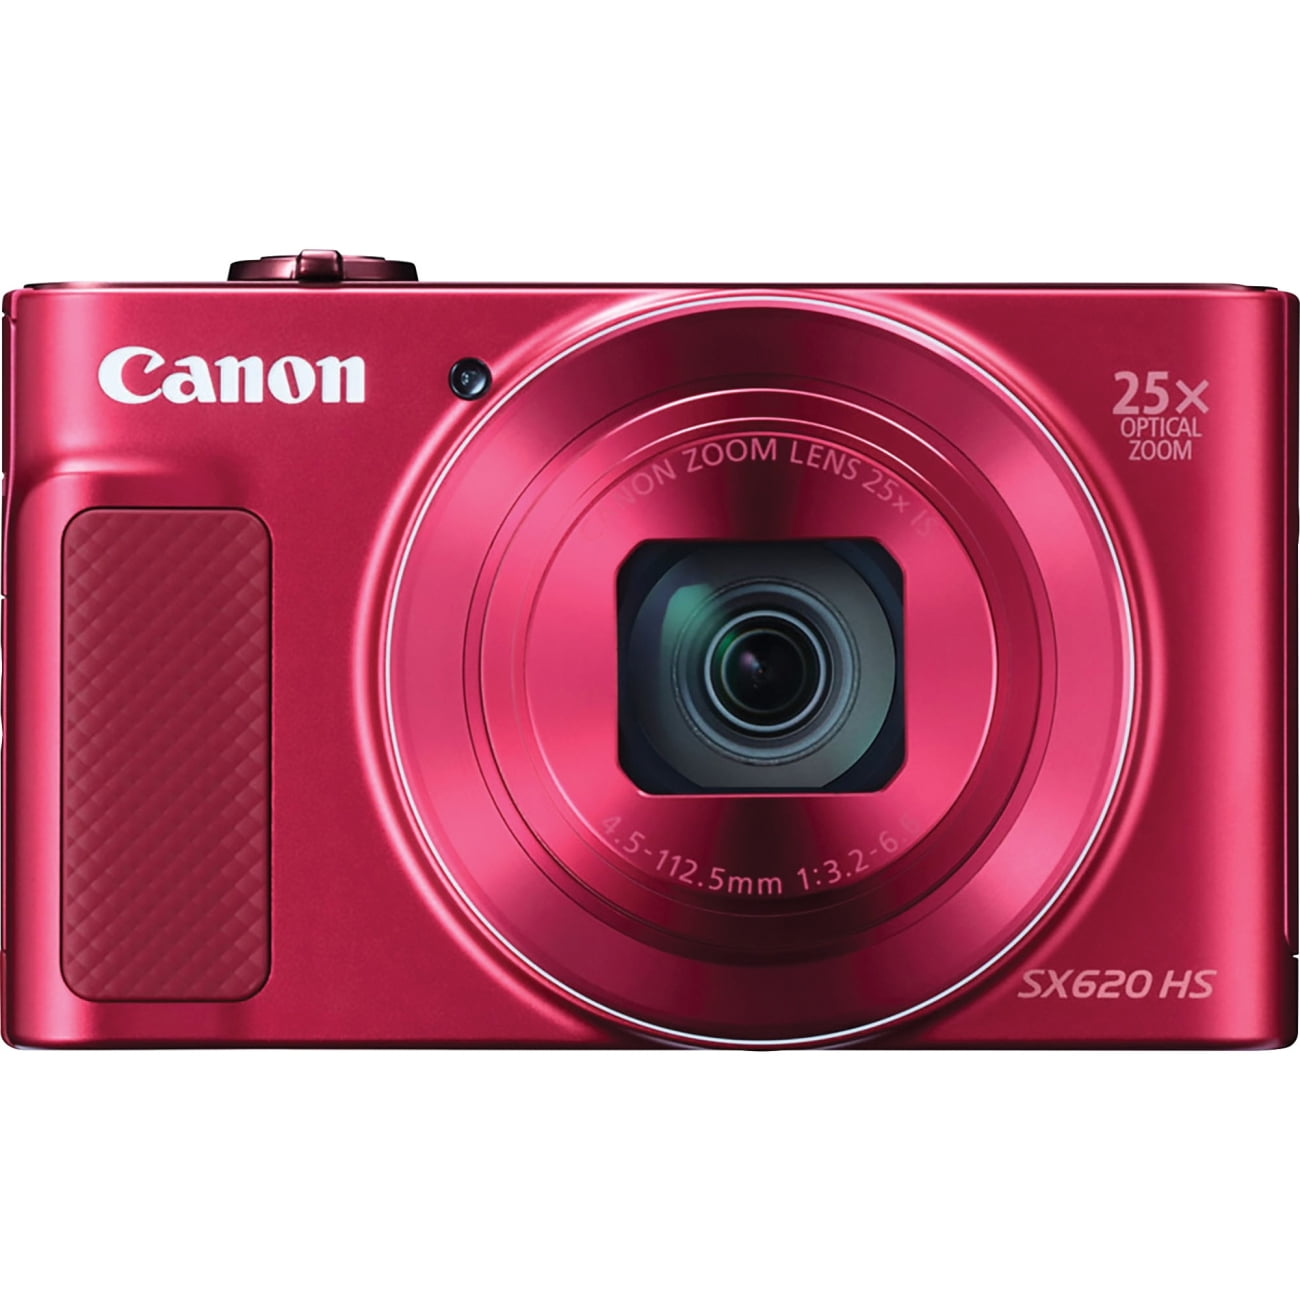 Maken Misverstand Lucht Canon PowerShot SX620 HS Digital Camera (Red) - Walmart.com